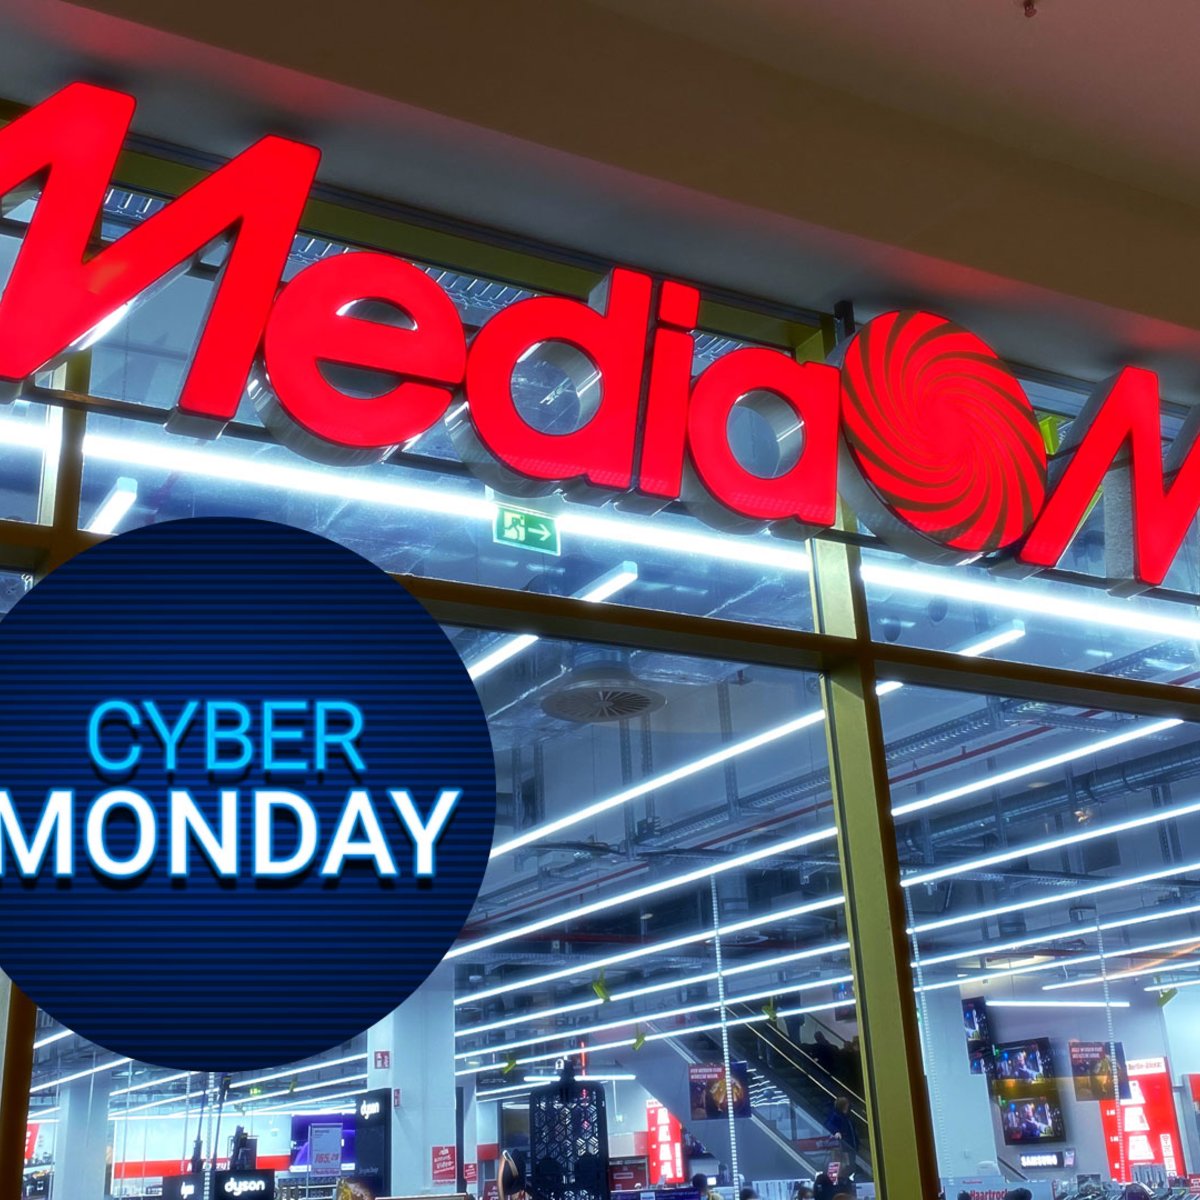 Cyber Monday: Die besten Deals von Media Markt und Saturn